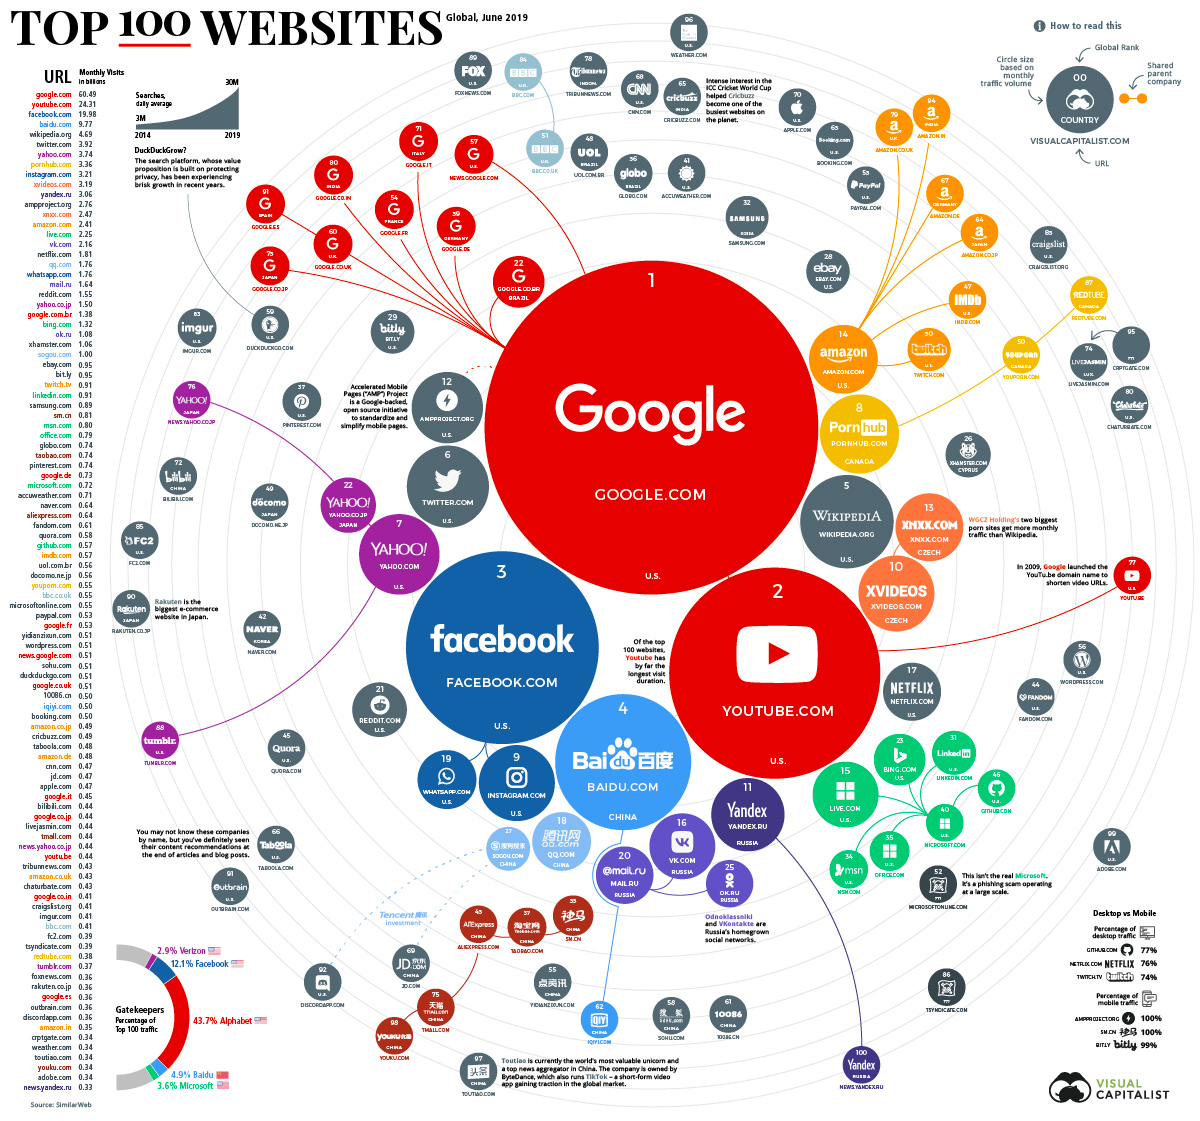 Ranking Top 100 Websites